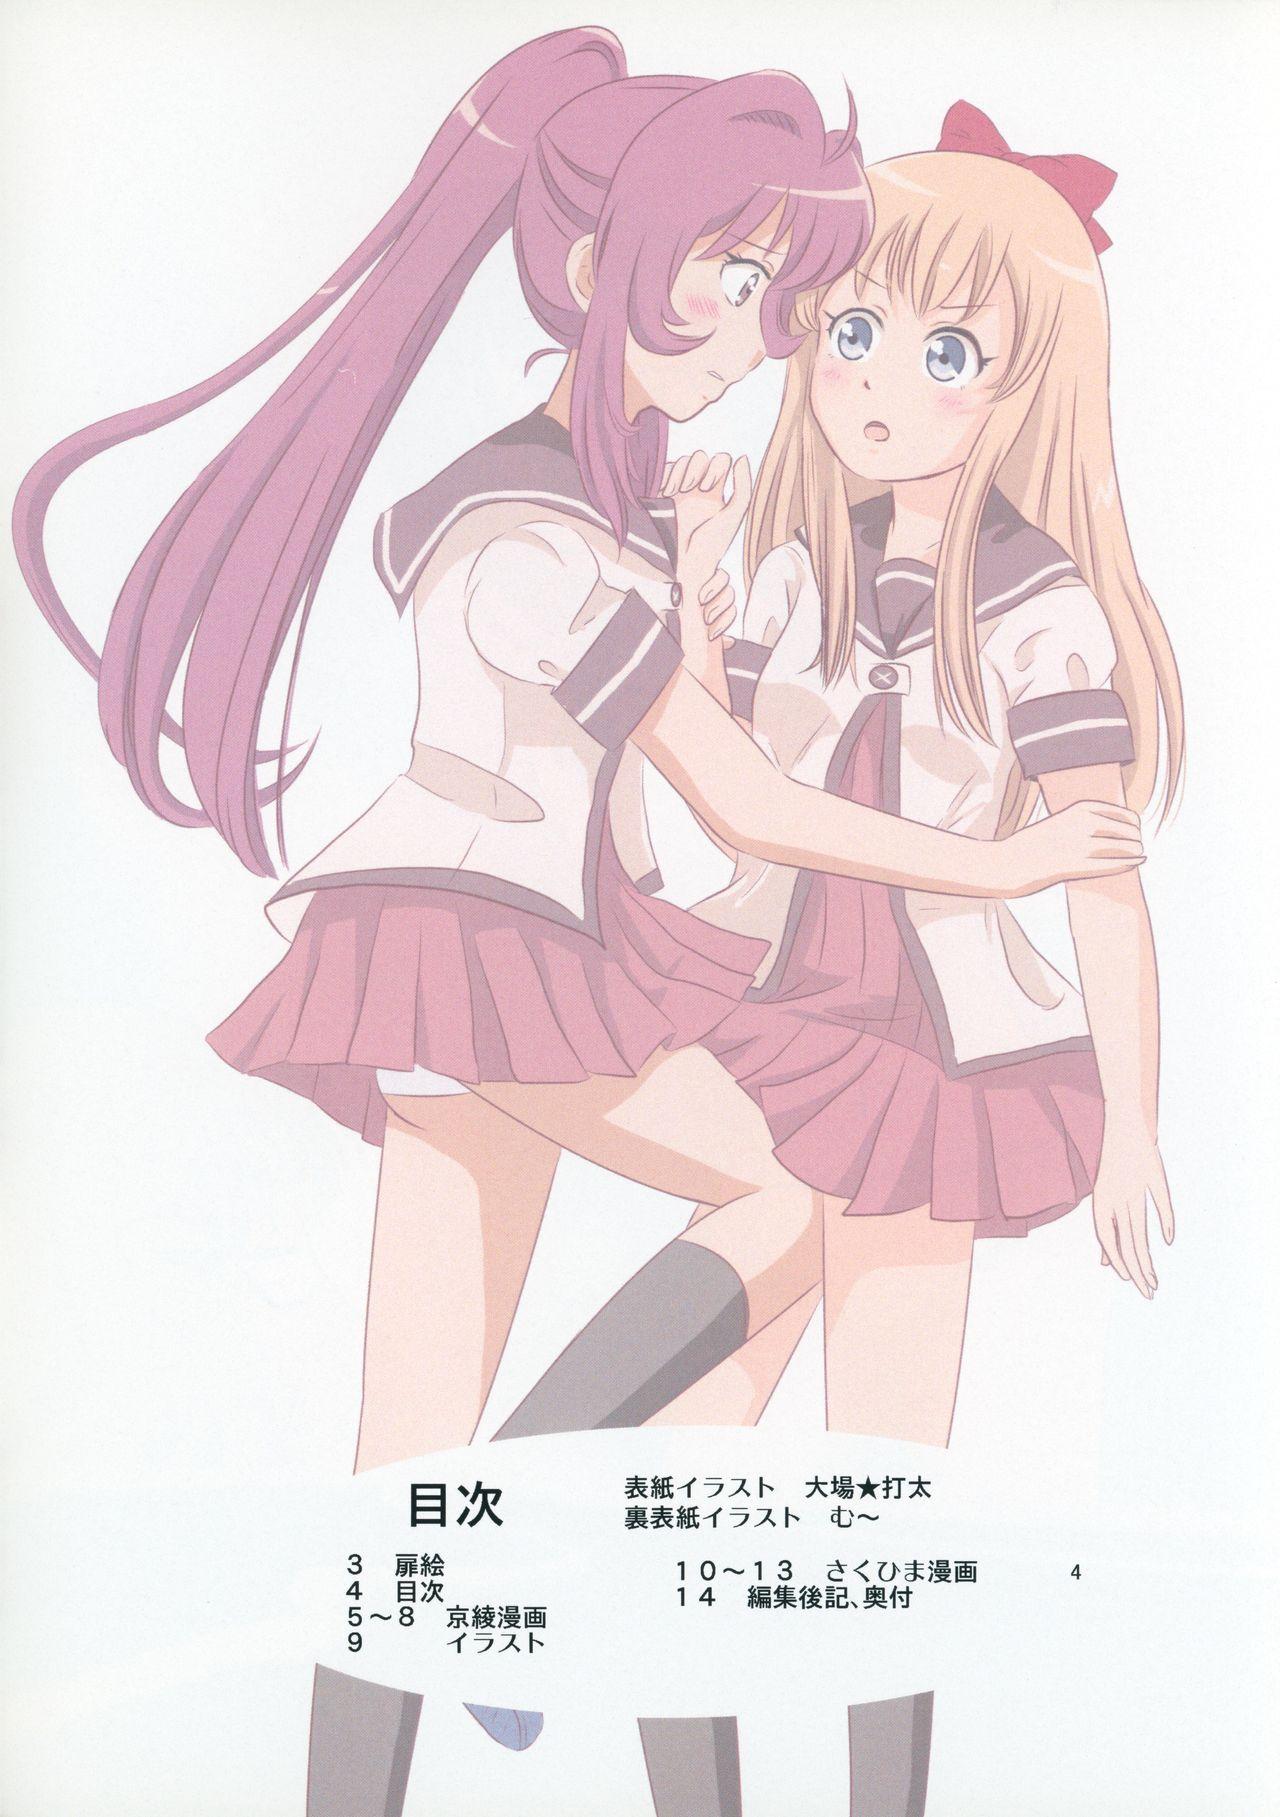 Uncensored Niwaka Chanponmen 12 - Yuruyuri Pretty - Page 3